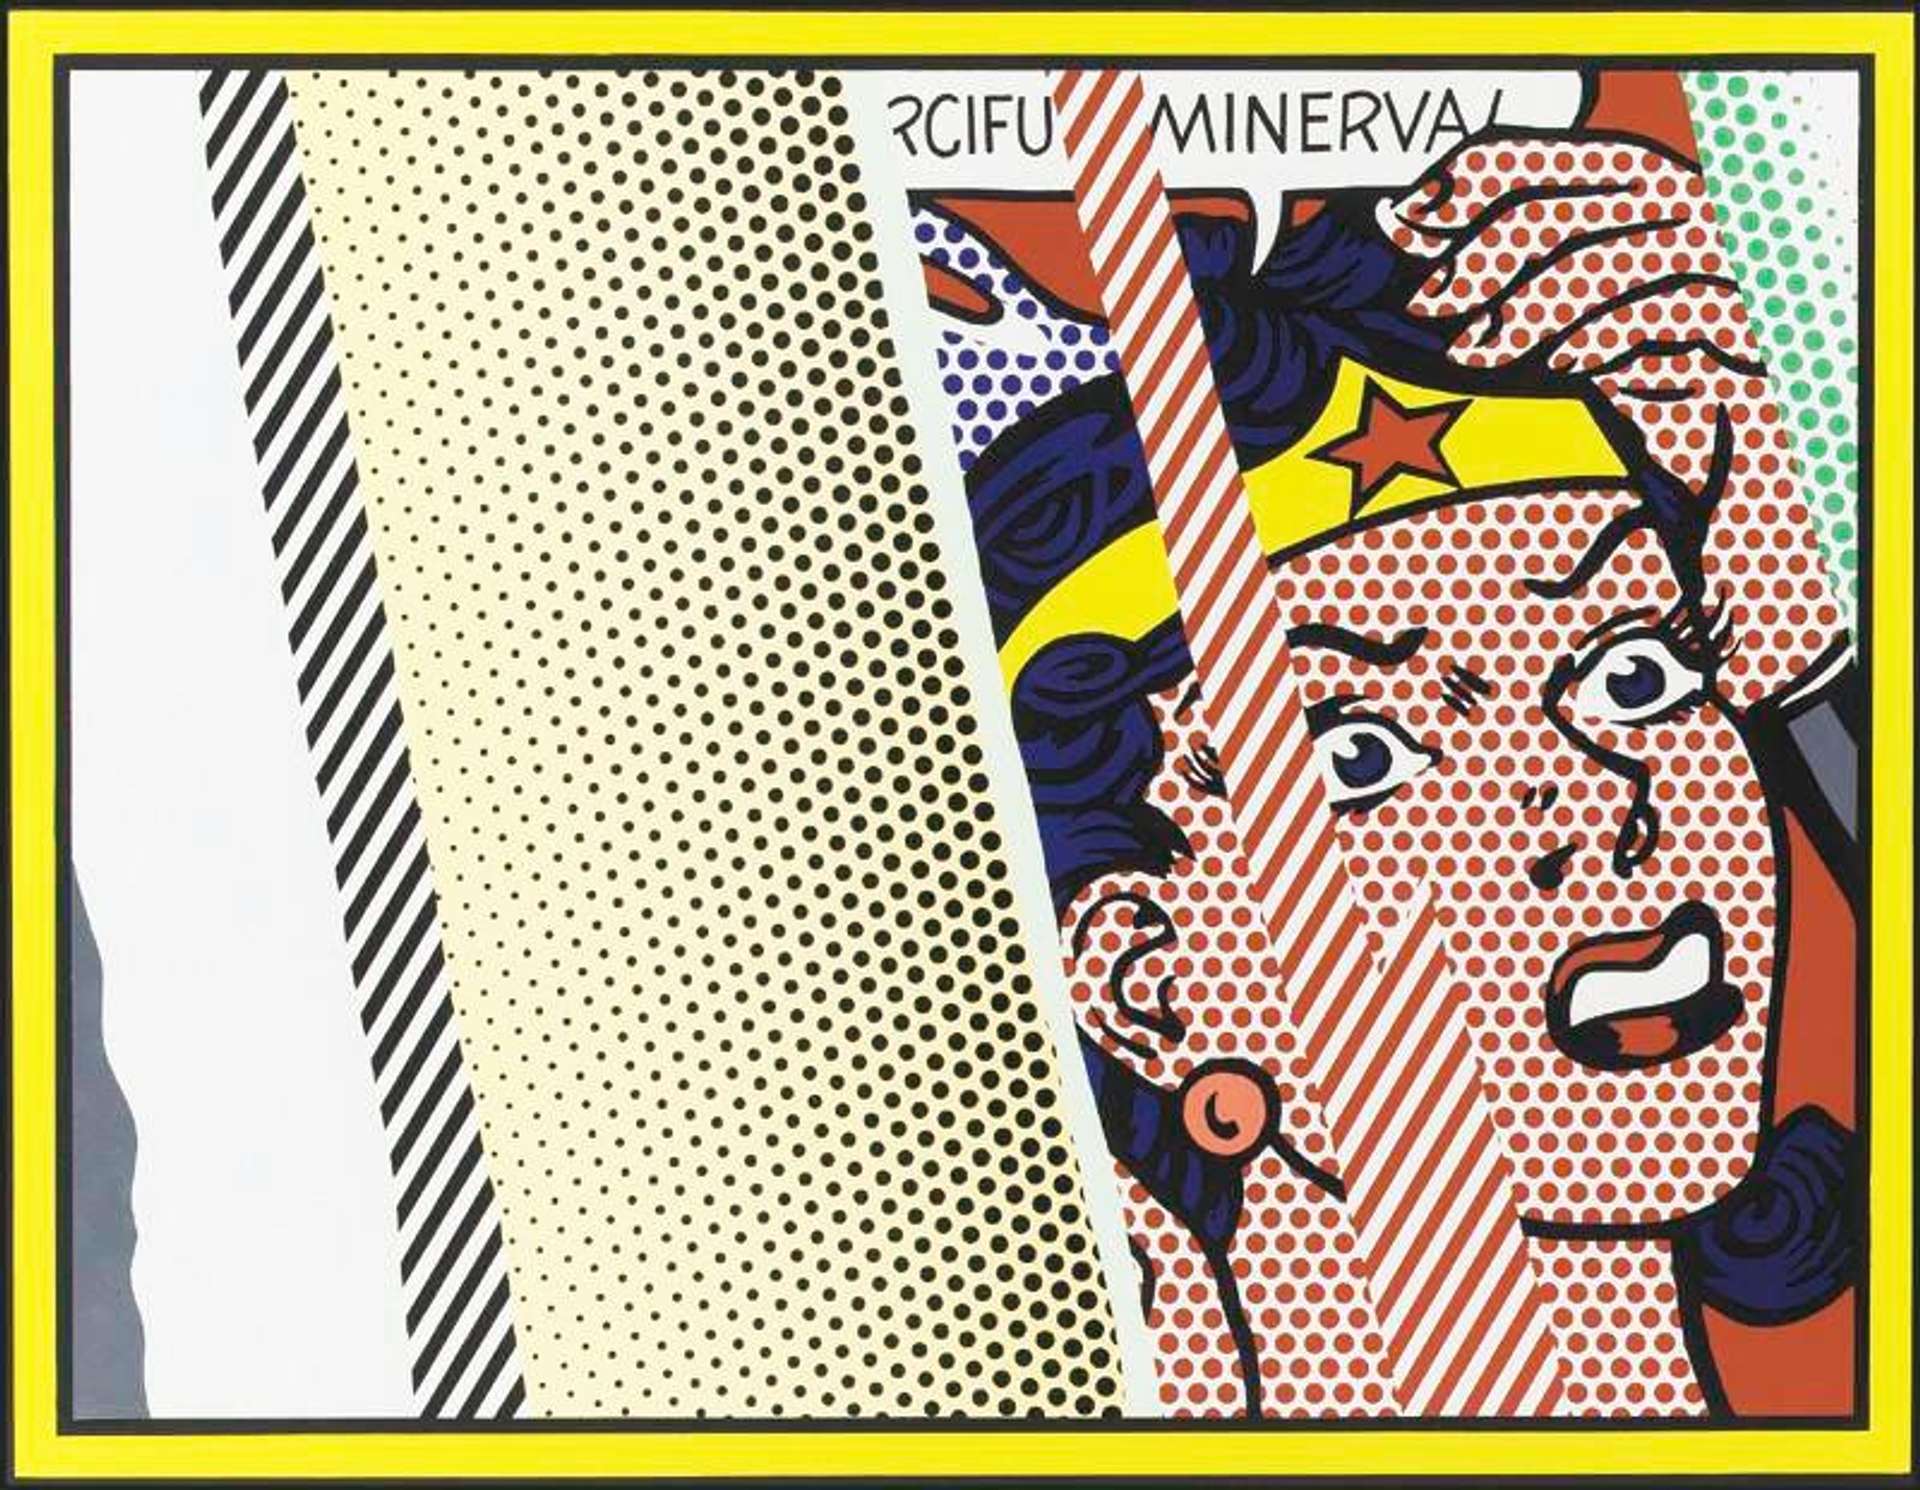 Reflections On Minerva - Signed Print by Roy Lichtenstein 1990 - MyArtBroker